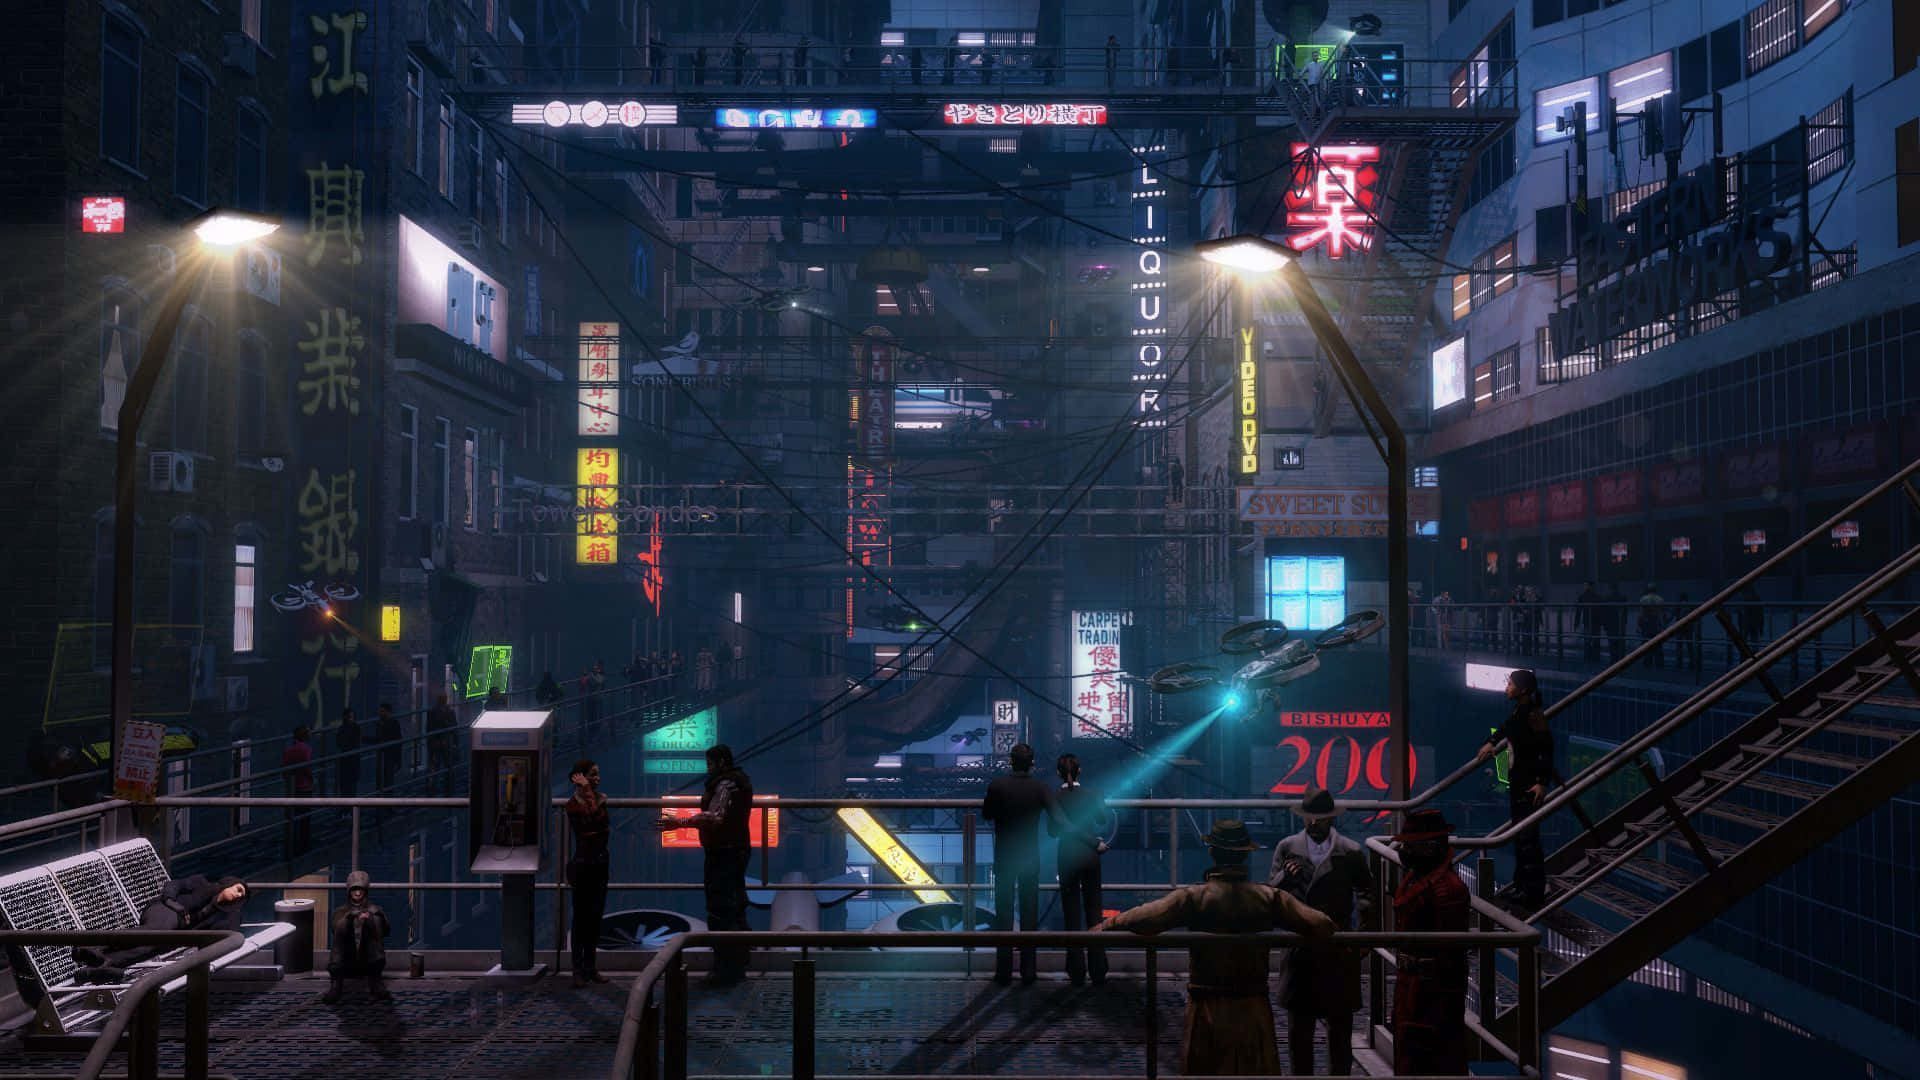 Sumérgeteen Un Mundo Distópico De Arte Pixelado Cyberpunk. Fondo de pantalla